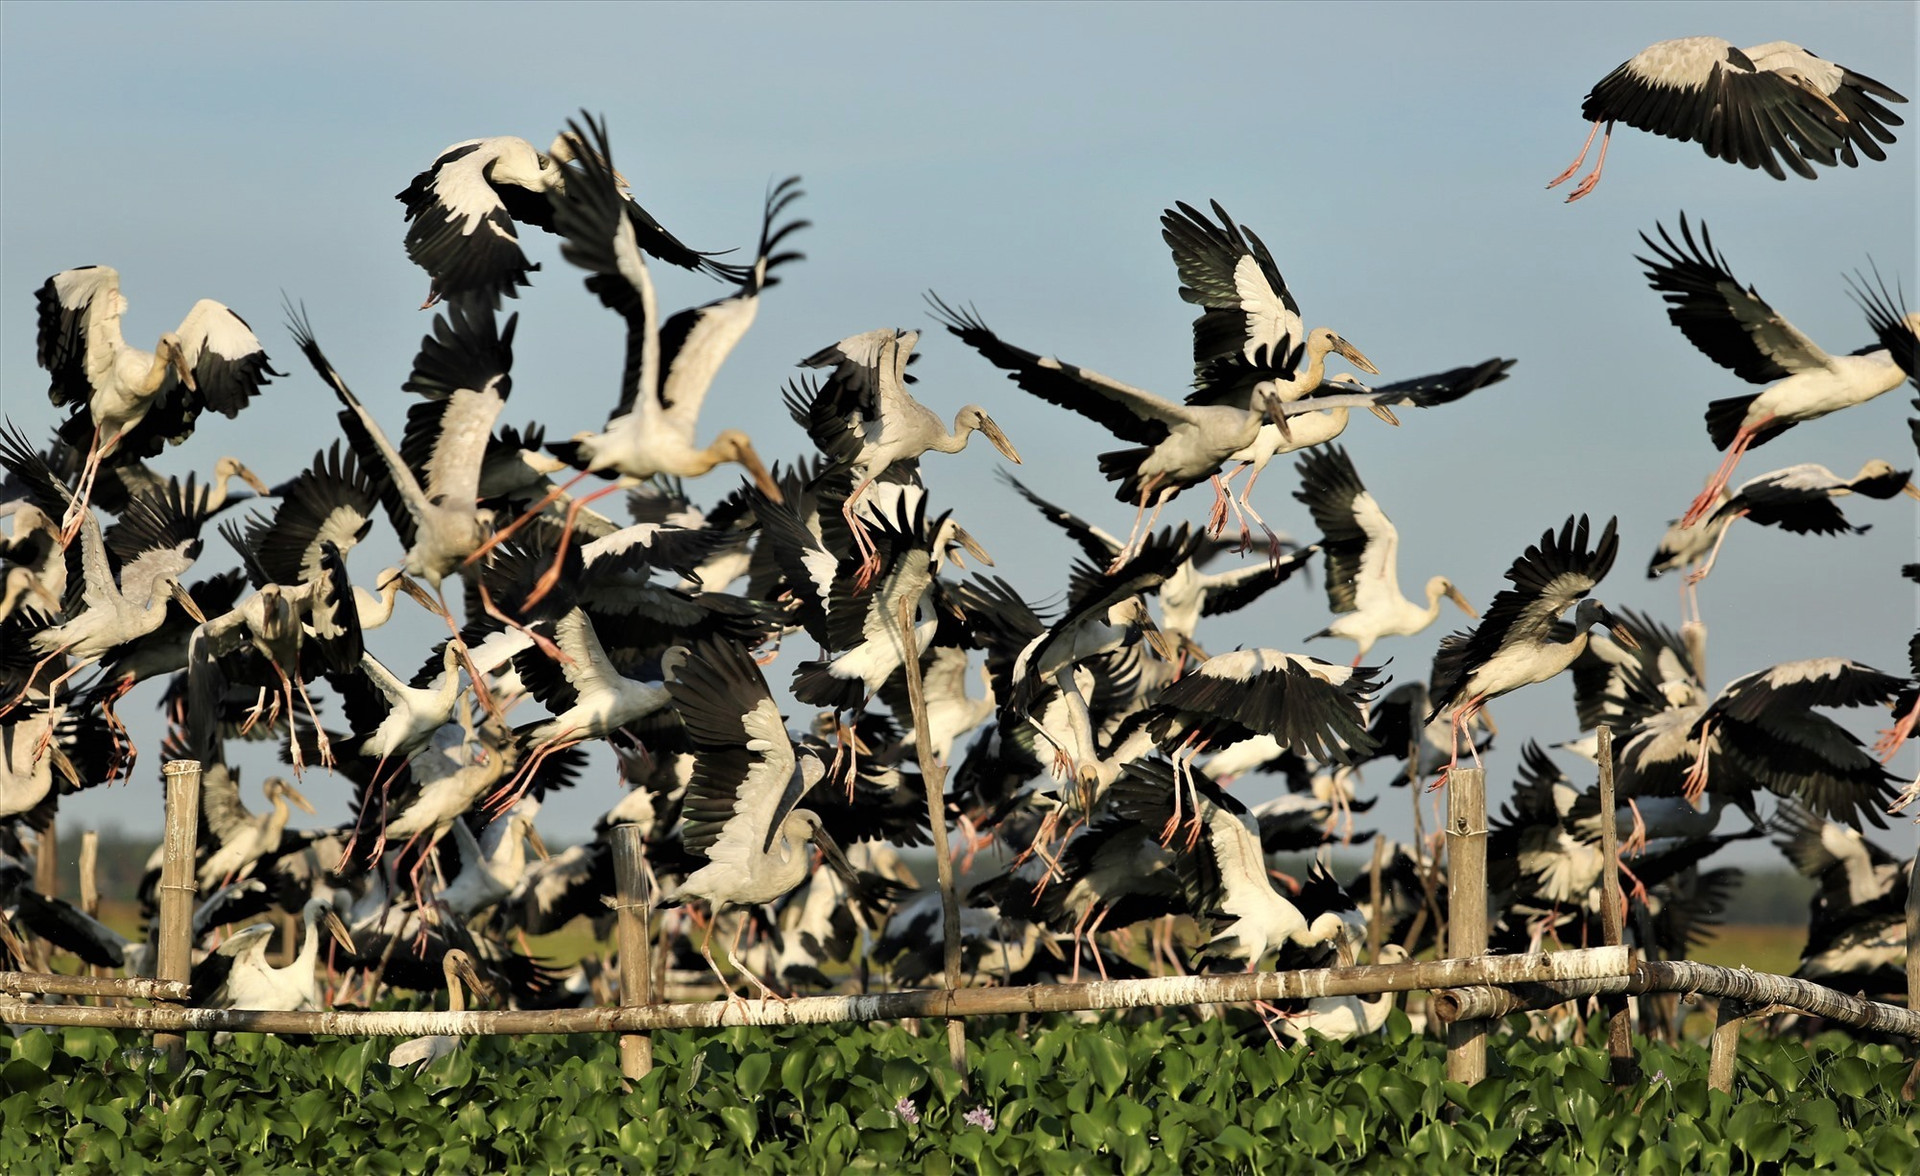 Đàn cò ốc bay về chuẩn bị đậu ở khu bãi cọc trên sông Đầm do người dân địa phương làm